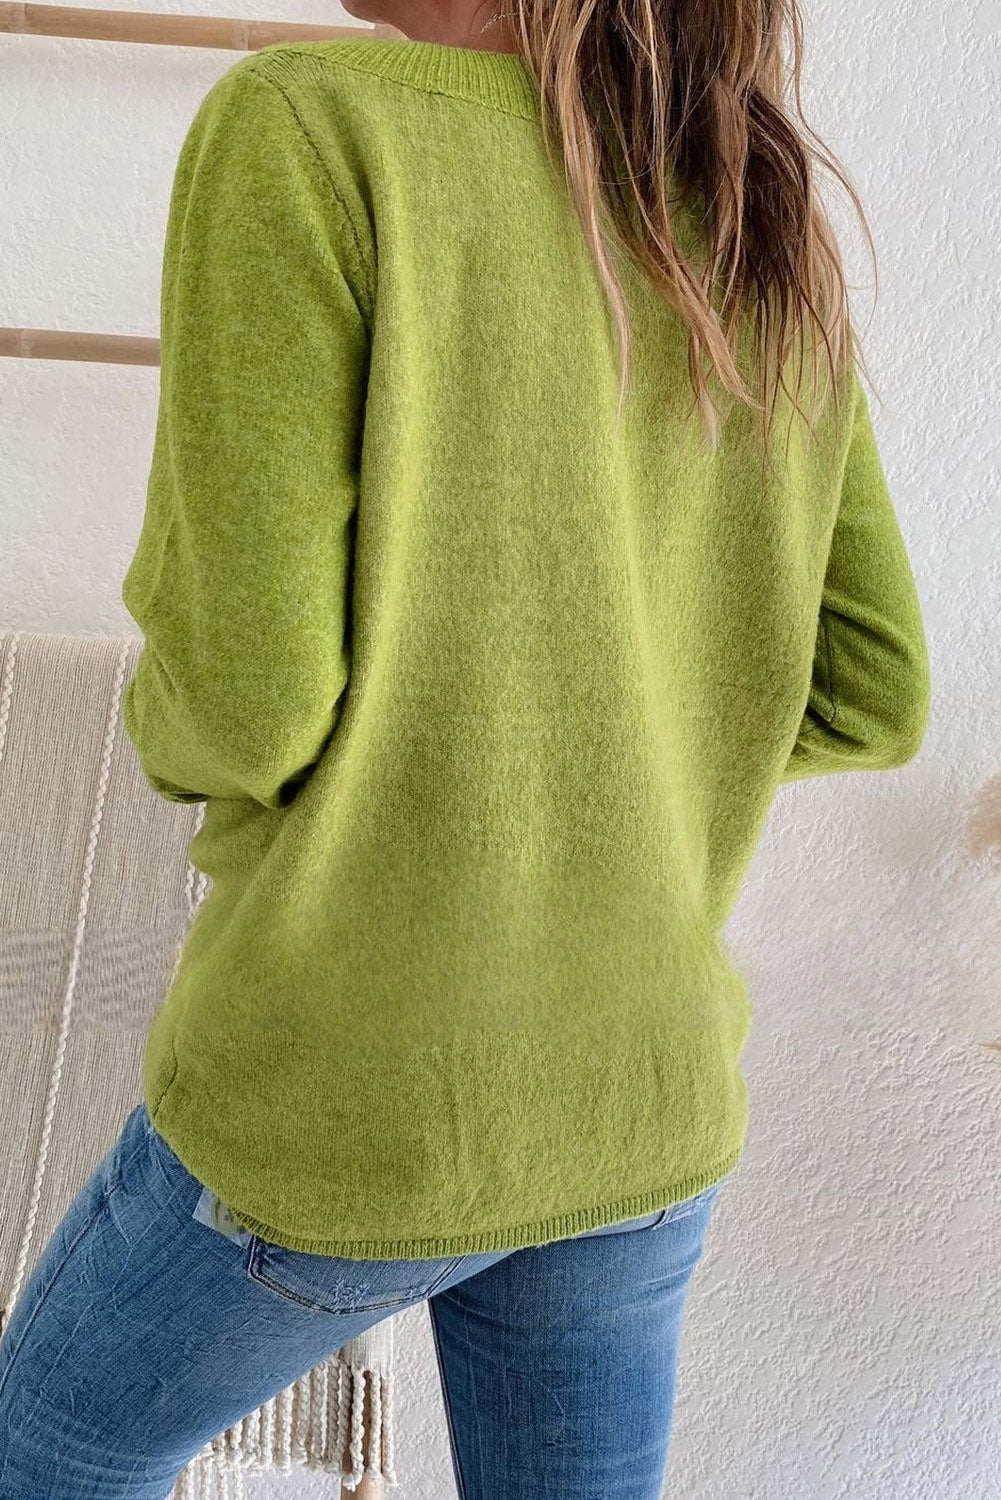 Grüner, einfarbiger Pullover mit Knopfleiste und V-Ausschnitt